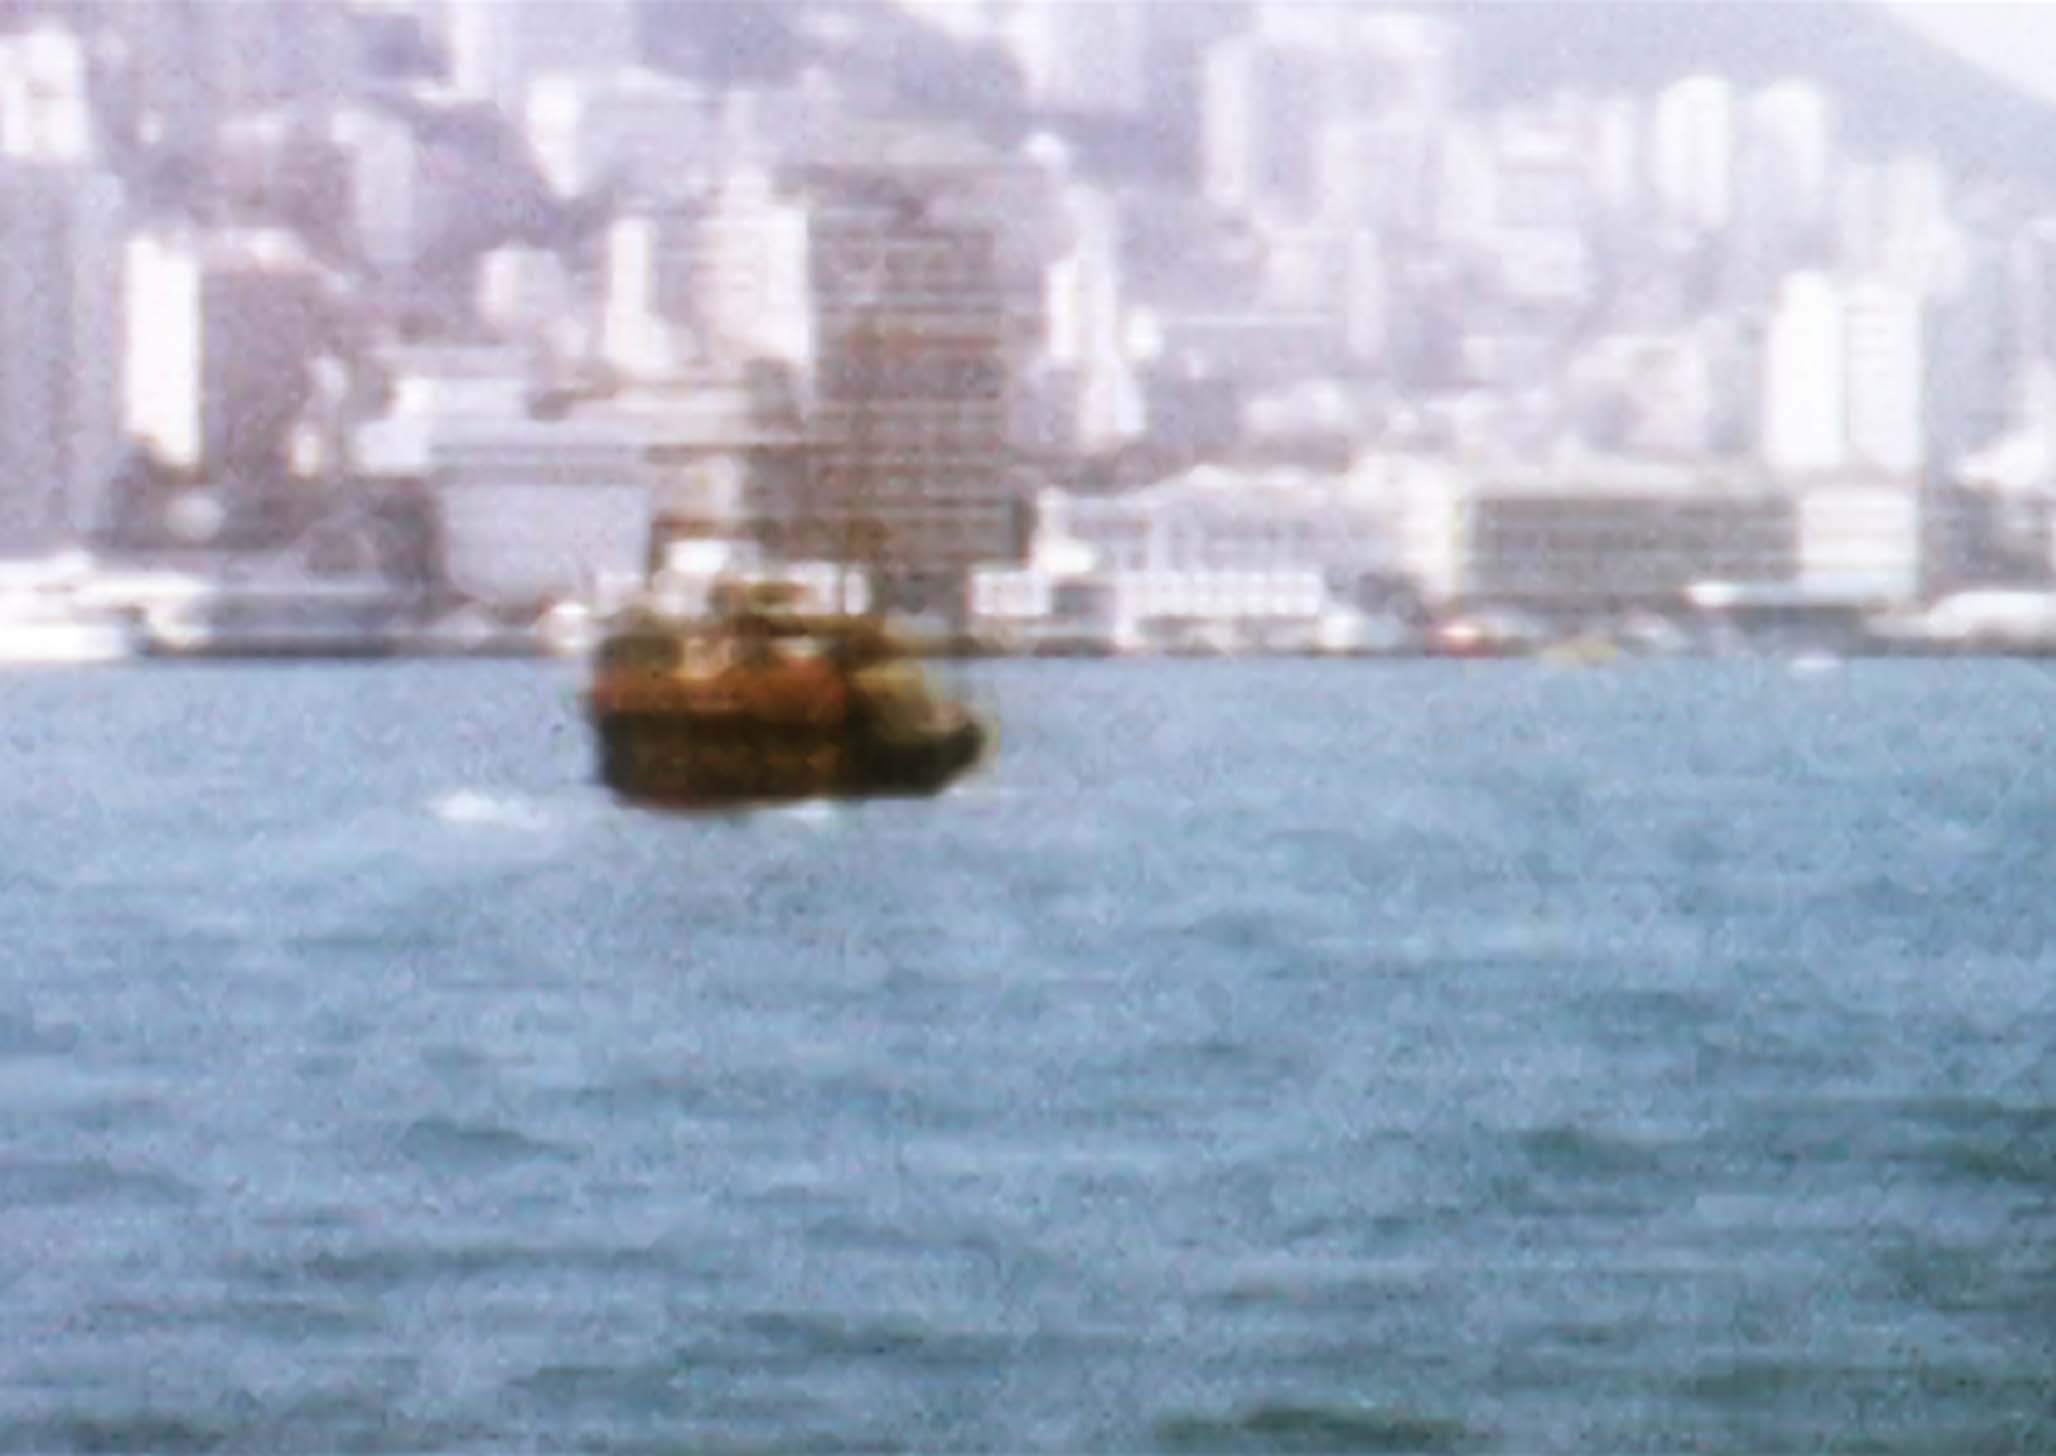 Hong Kong 68 BG Image 03